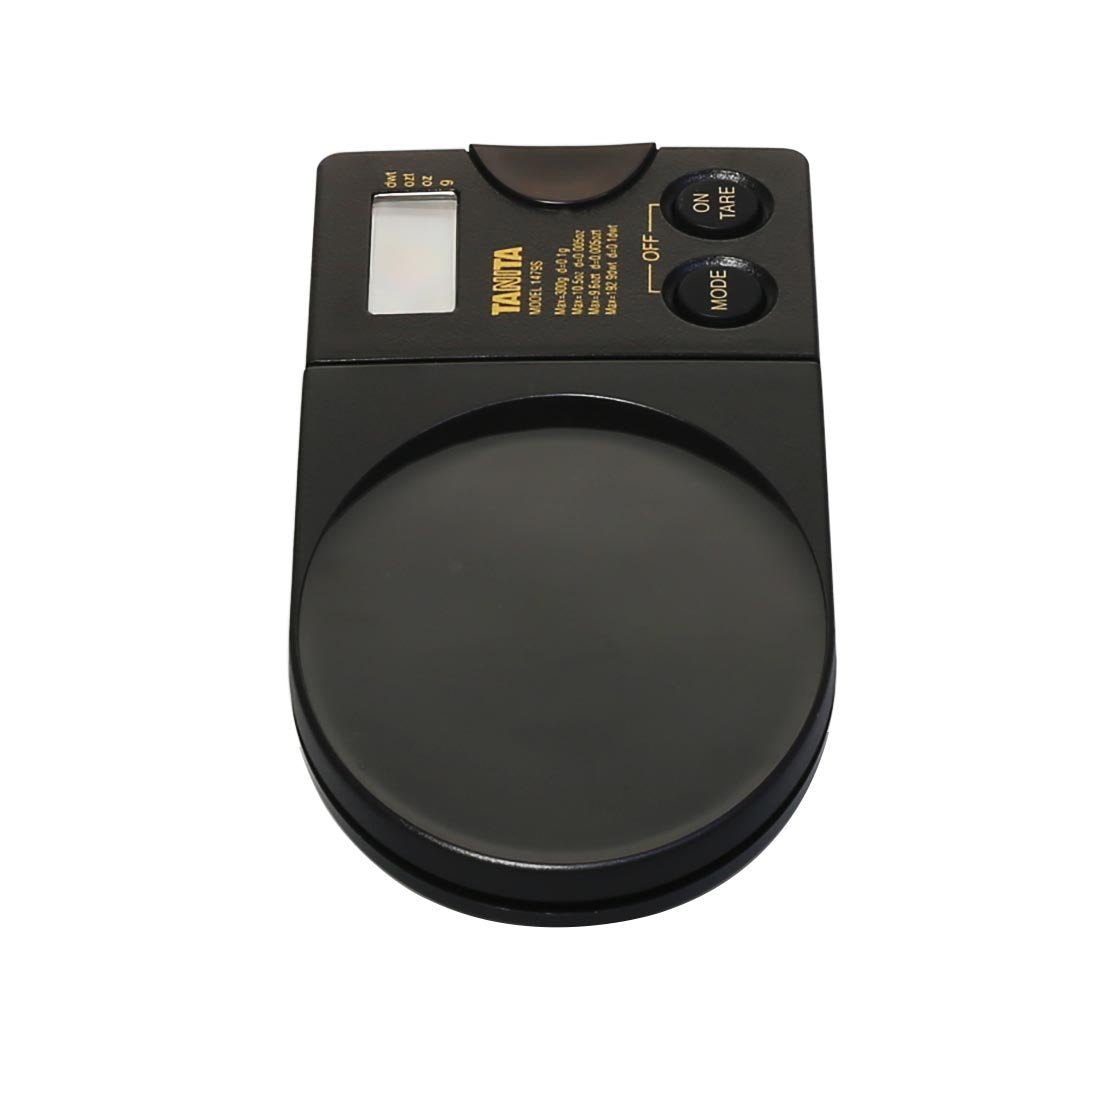 Balance de poche électronique numérique Tanita 1479S 300x0,1 g.